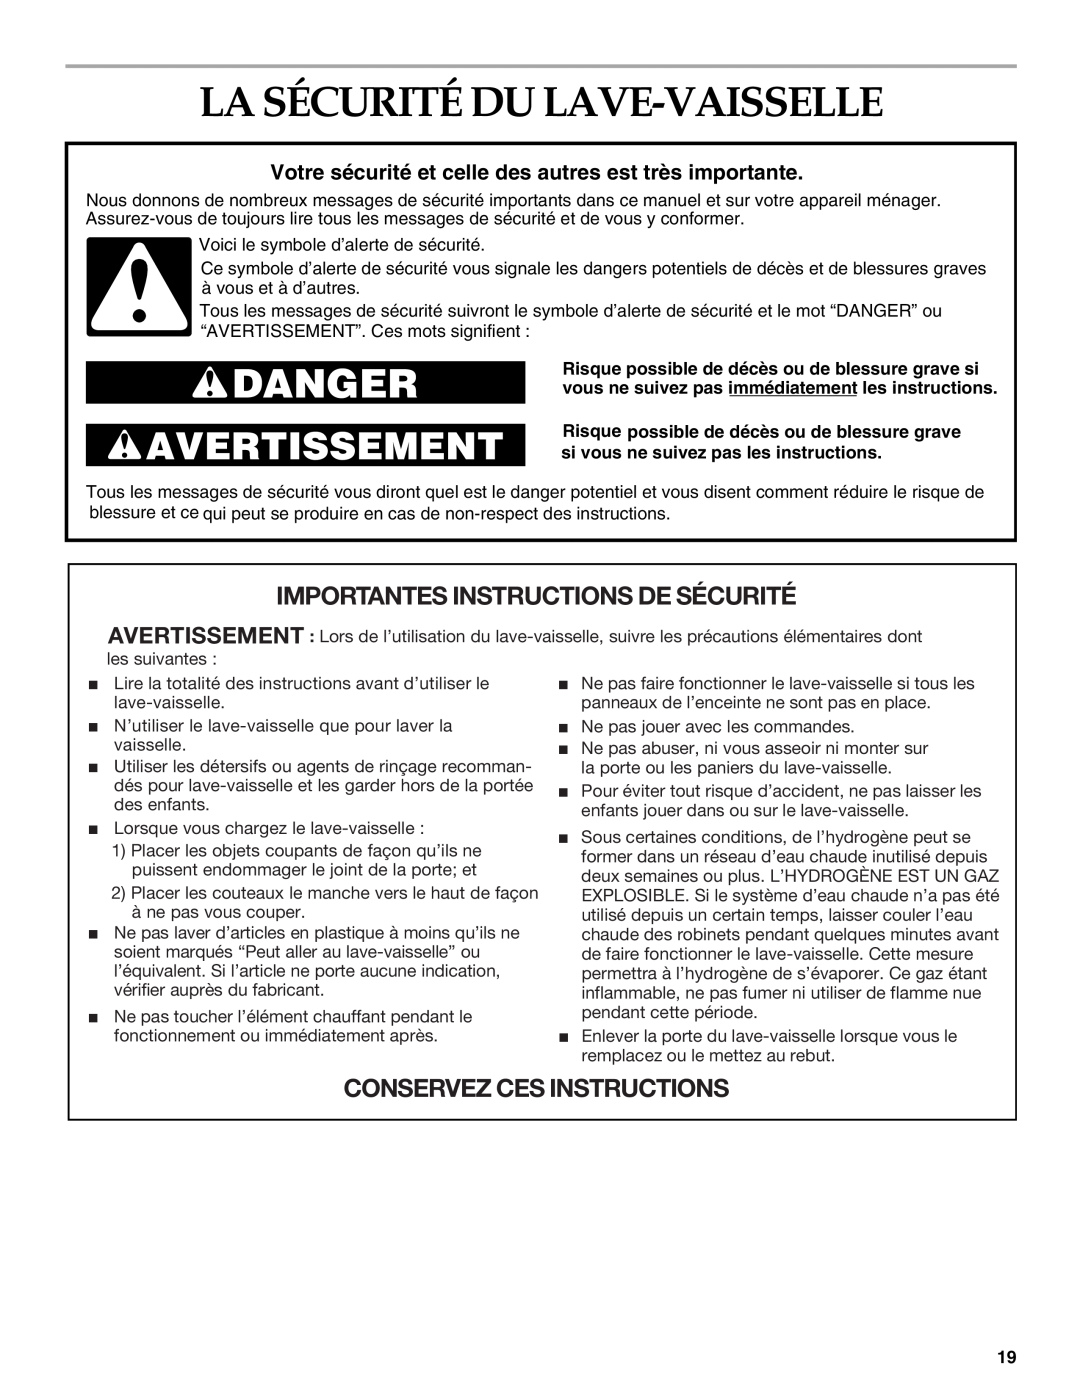 KitchenAid KUDI01FK manual La Sécurité Du Lave-Vaisselle, Votre sécurité et celle des autres est très importante, Danger 